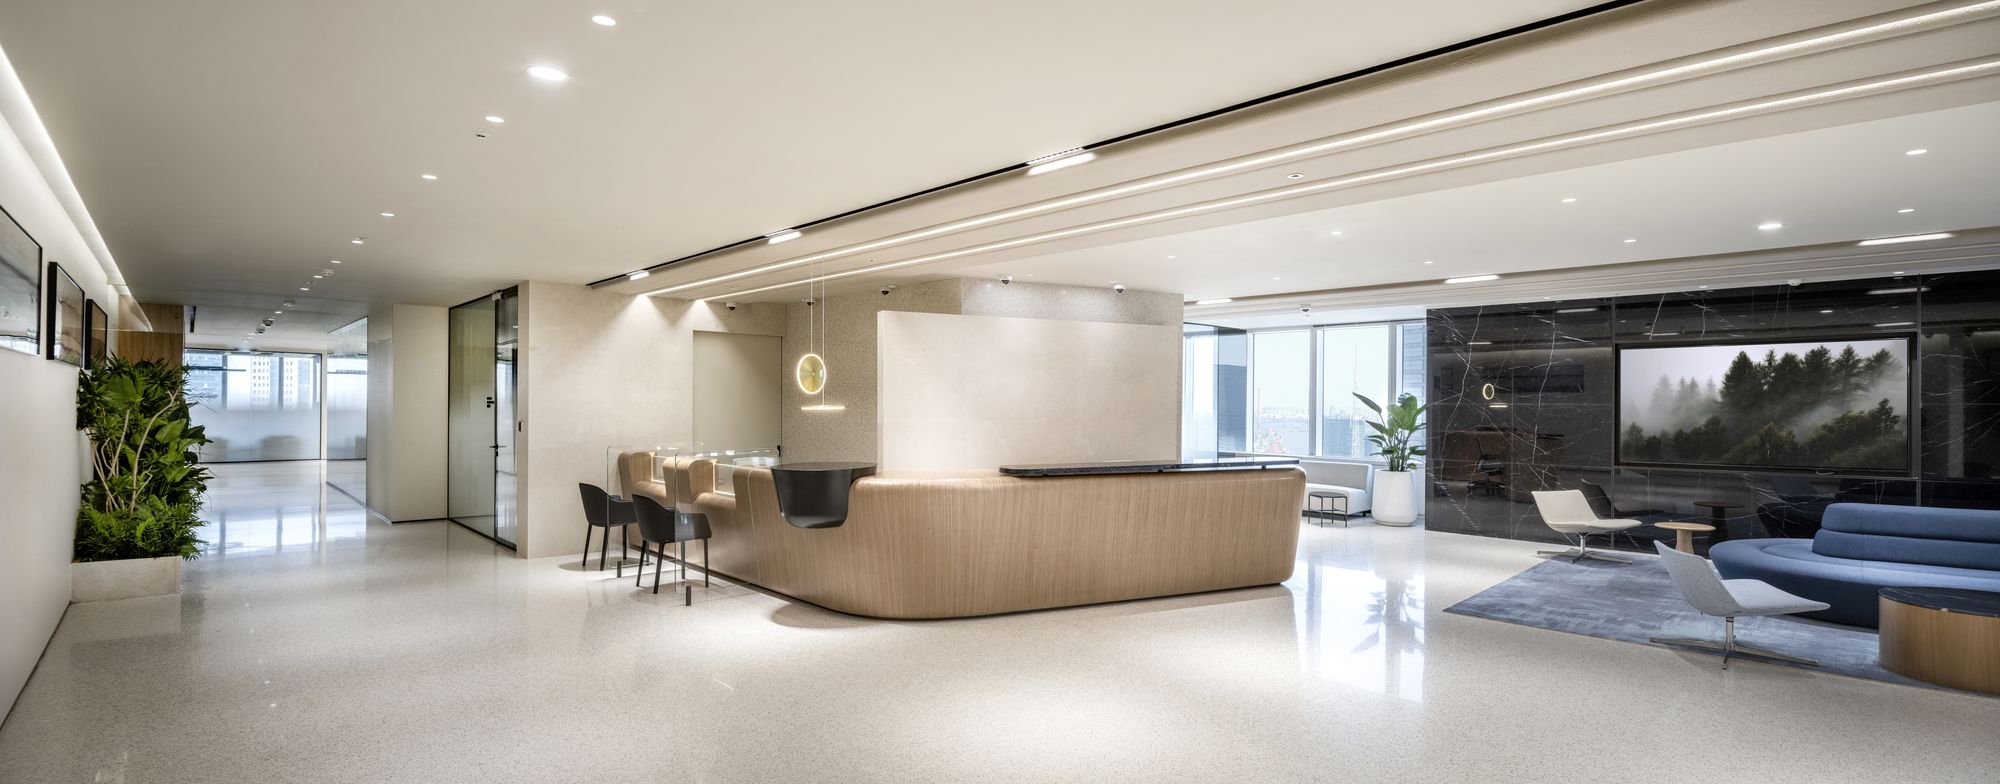 机密韩国银行办公室——上海|ART-Arrakis | 建筑室内设计的创新与灵感